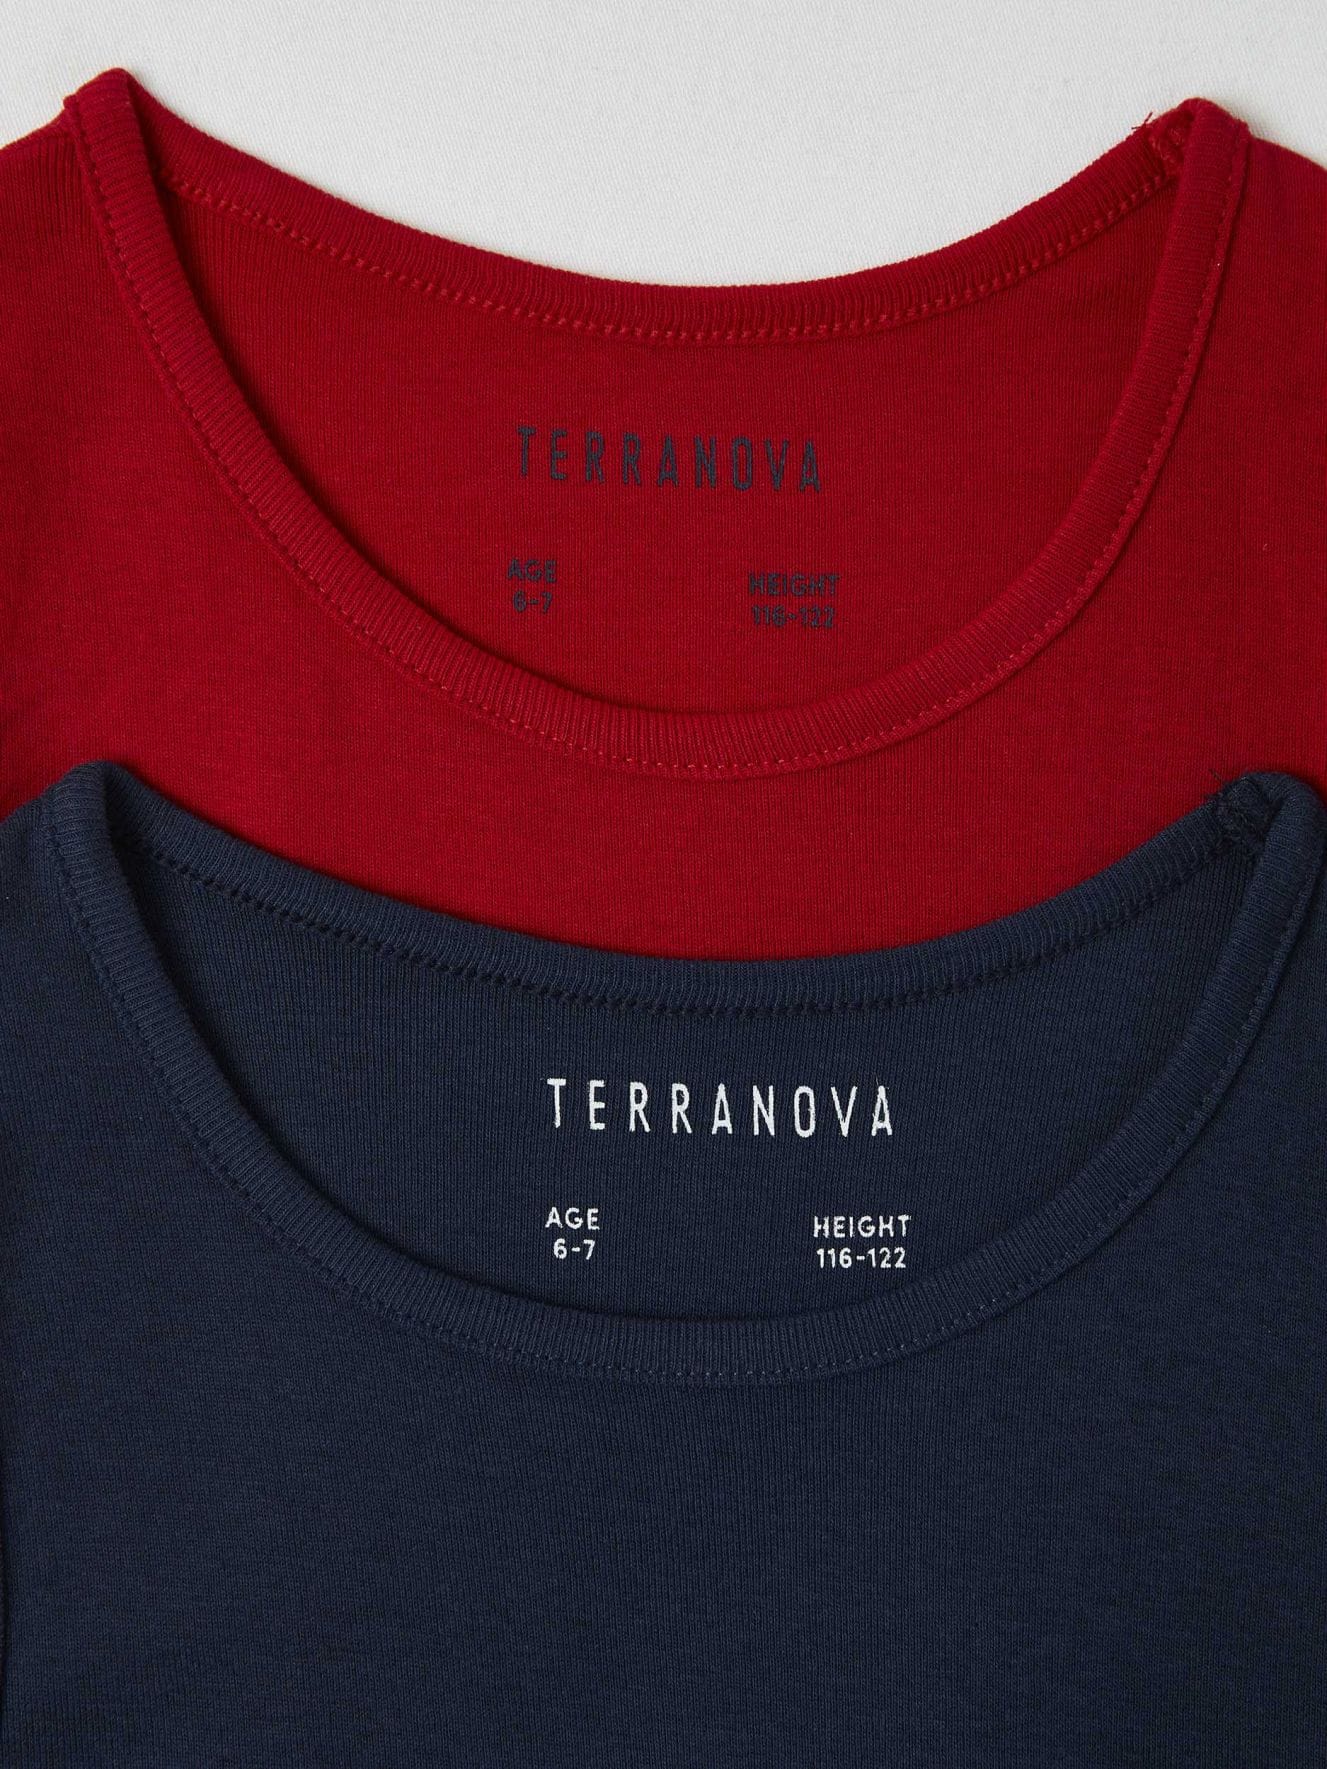 Camiseta nino Terranova